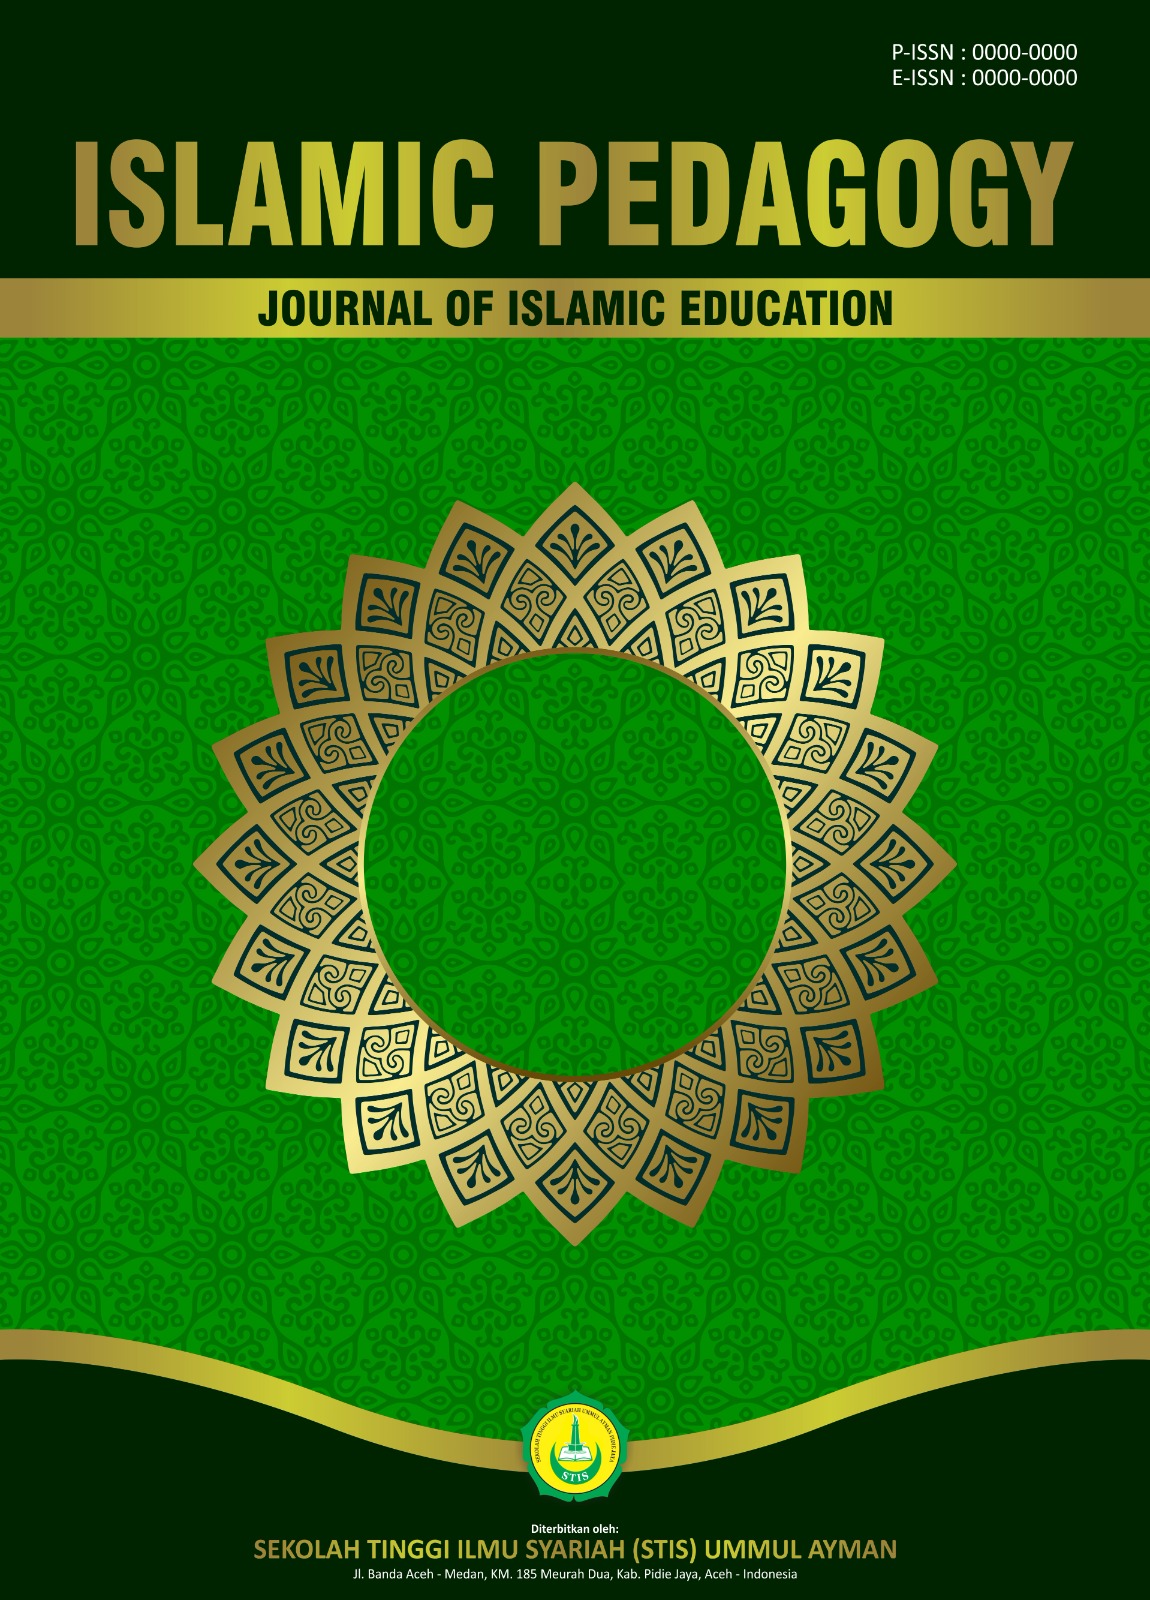 ISLAMIC PEDAGOGY: Journal of Islamic Education merupakan Fokus jurnal ini menerbitkan berbagai artikel penelitian dan kajian literatur tentang keilmuan dan kemajuan pendidikan Islam, seperti topik studi pendidika